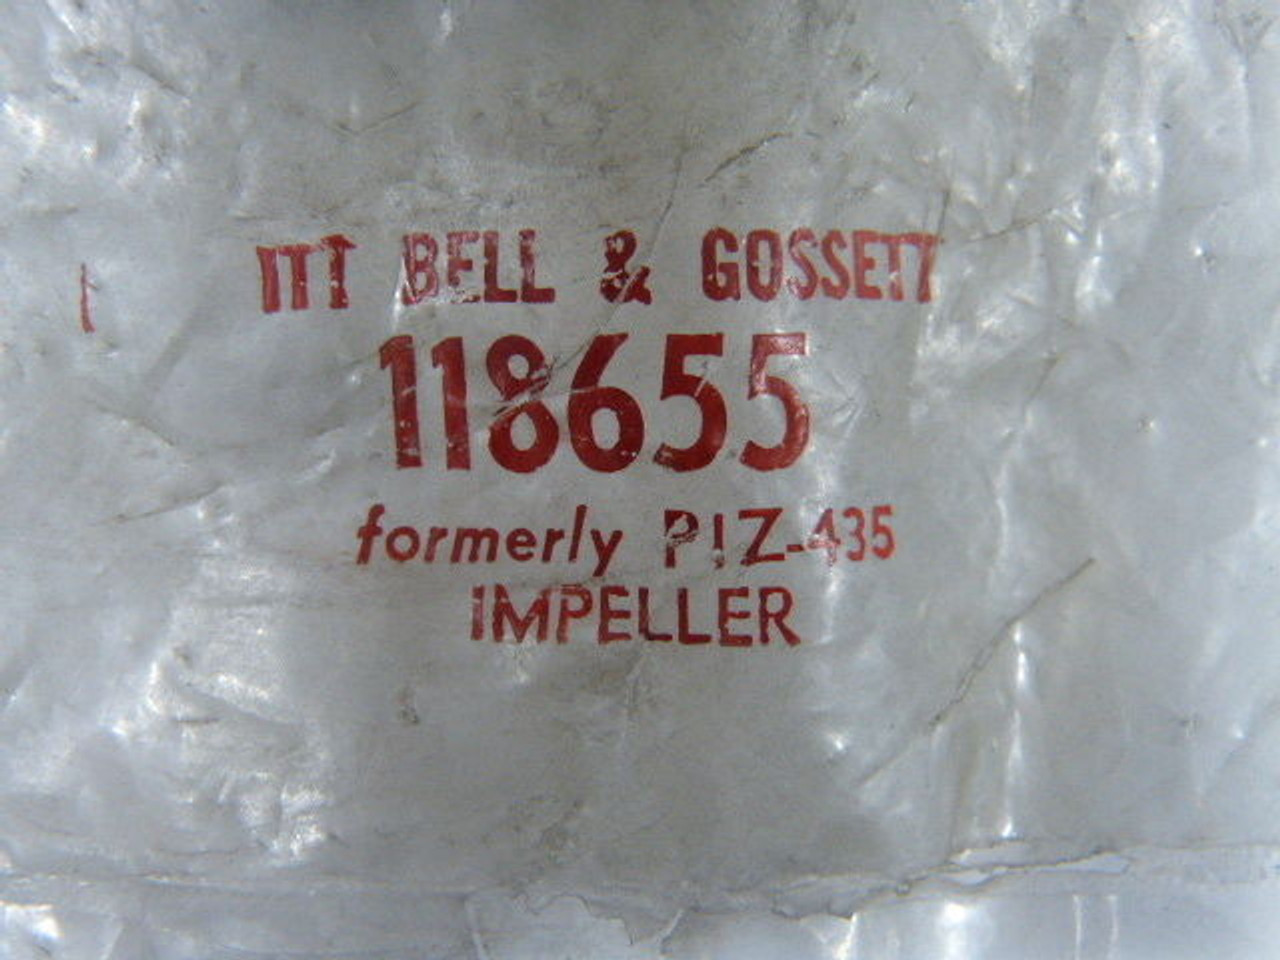 Bell & Gosset 118655 Impeller ! NEW !